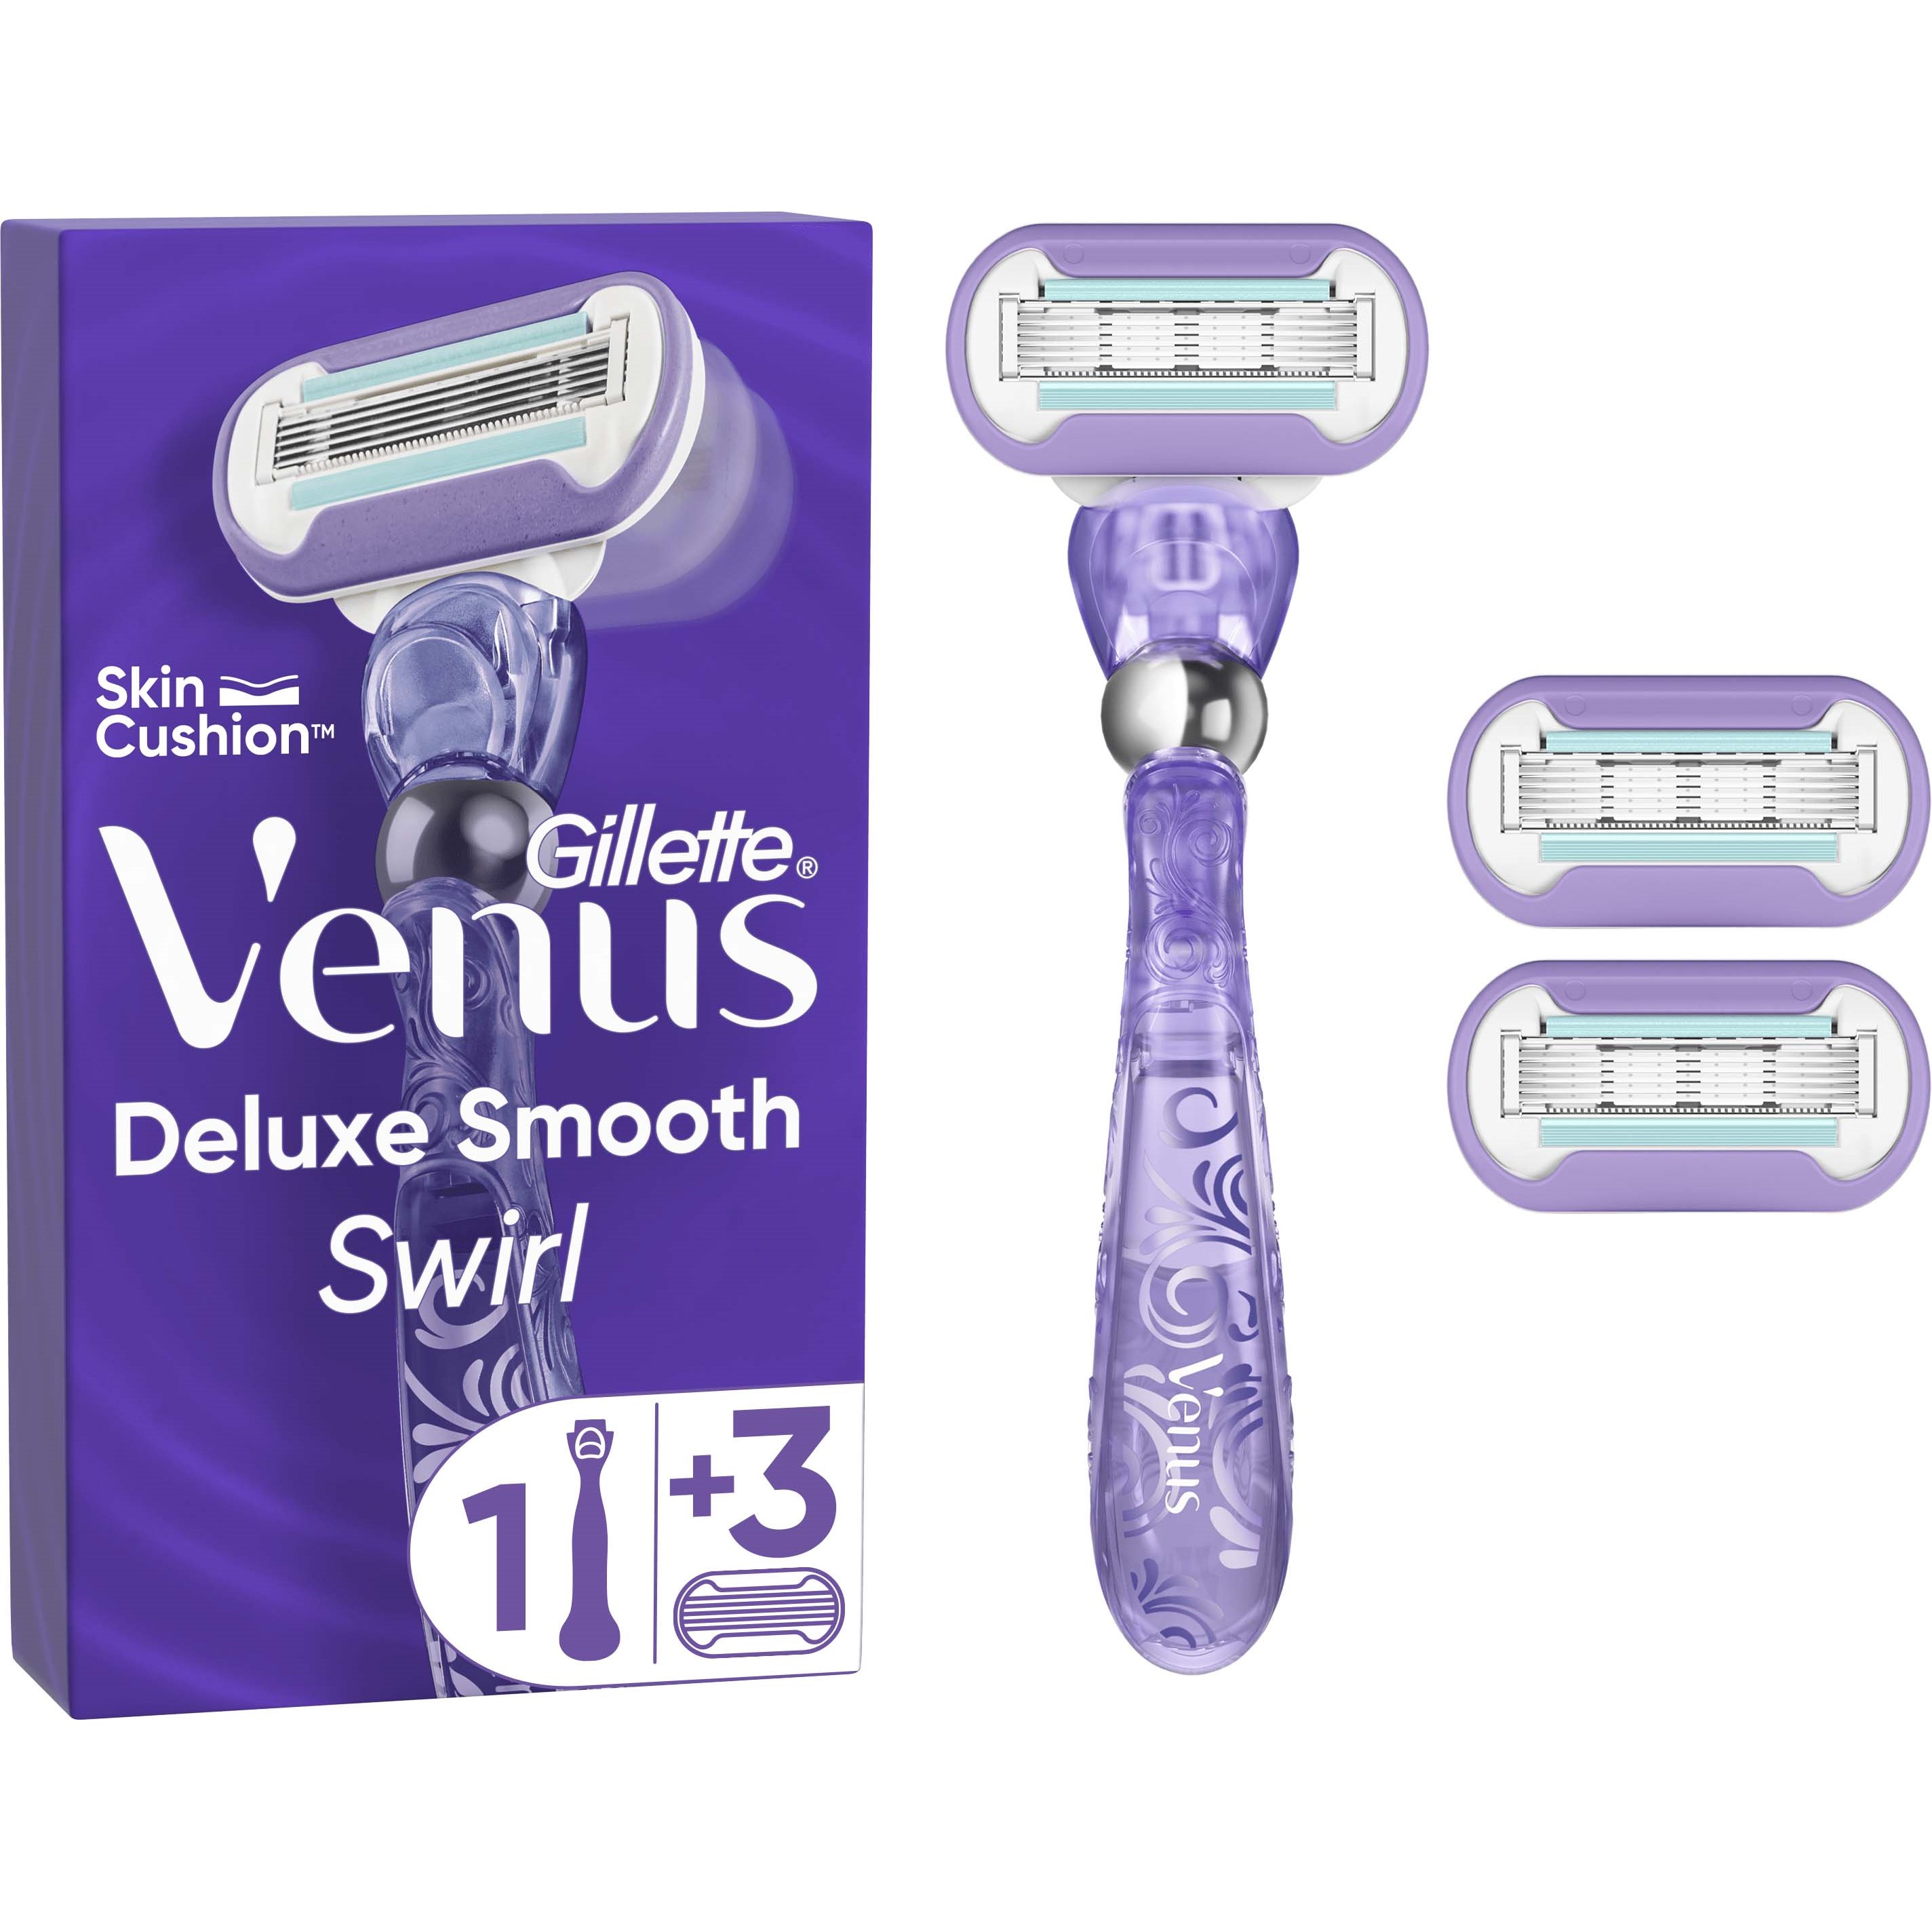 Bilde av Gillette Venus deluxe smooth swirl razor 3 blades